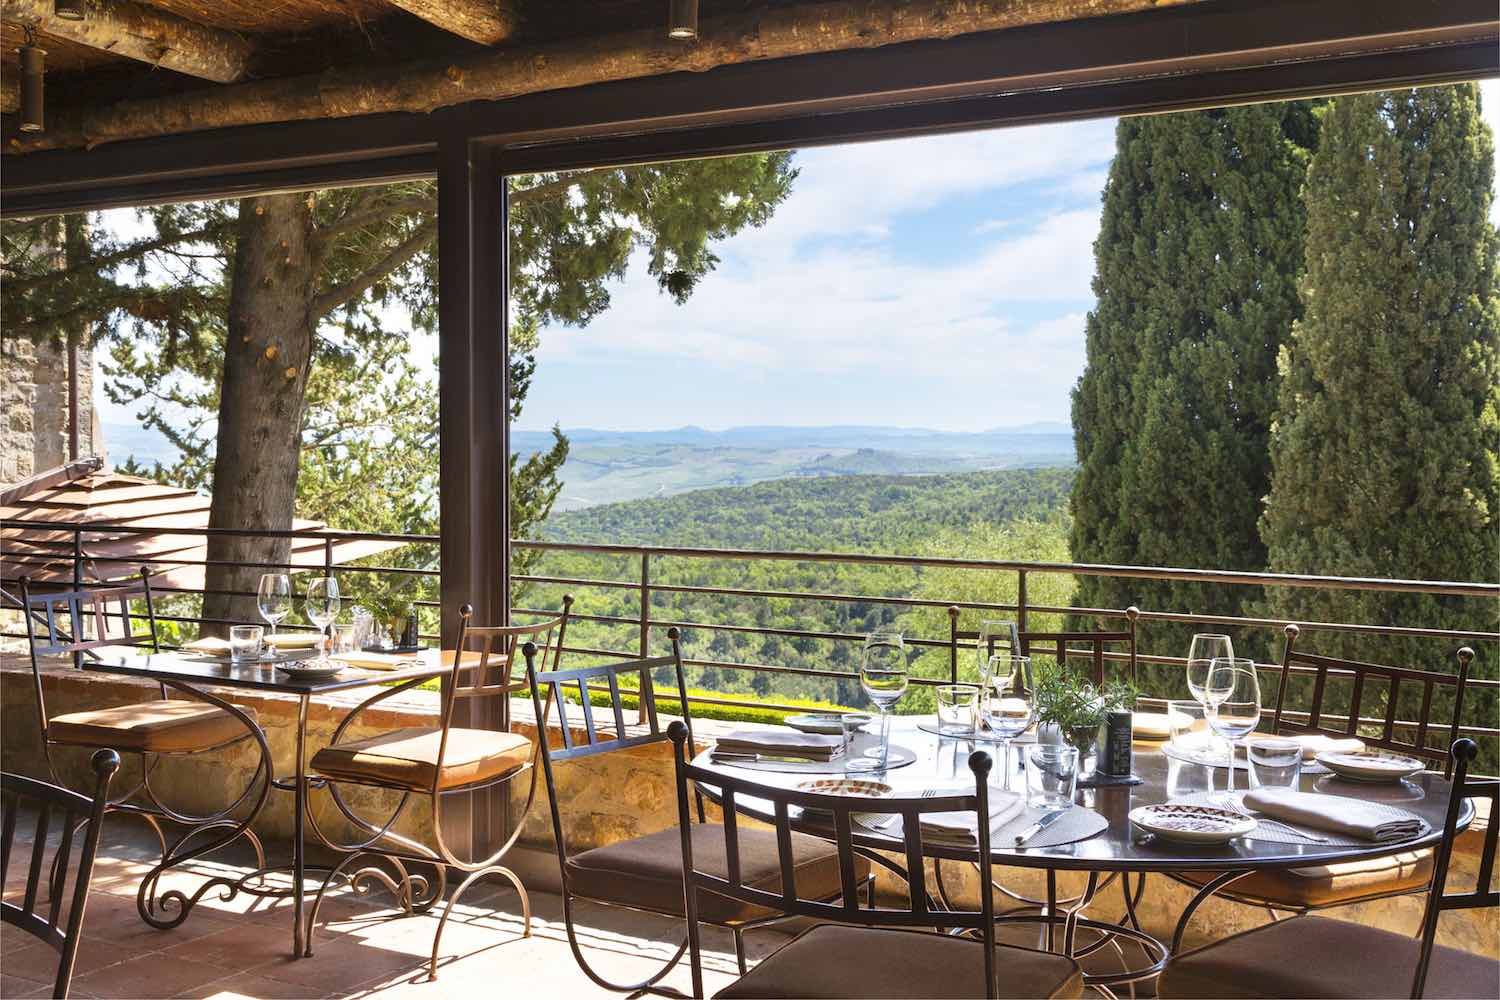 Al Rosewood Castoglio del Bosco, resort 5 stelle in Toscana, Val d'Orcia, Montalcino è iniziata una lunga stagione dedicata al gusto